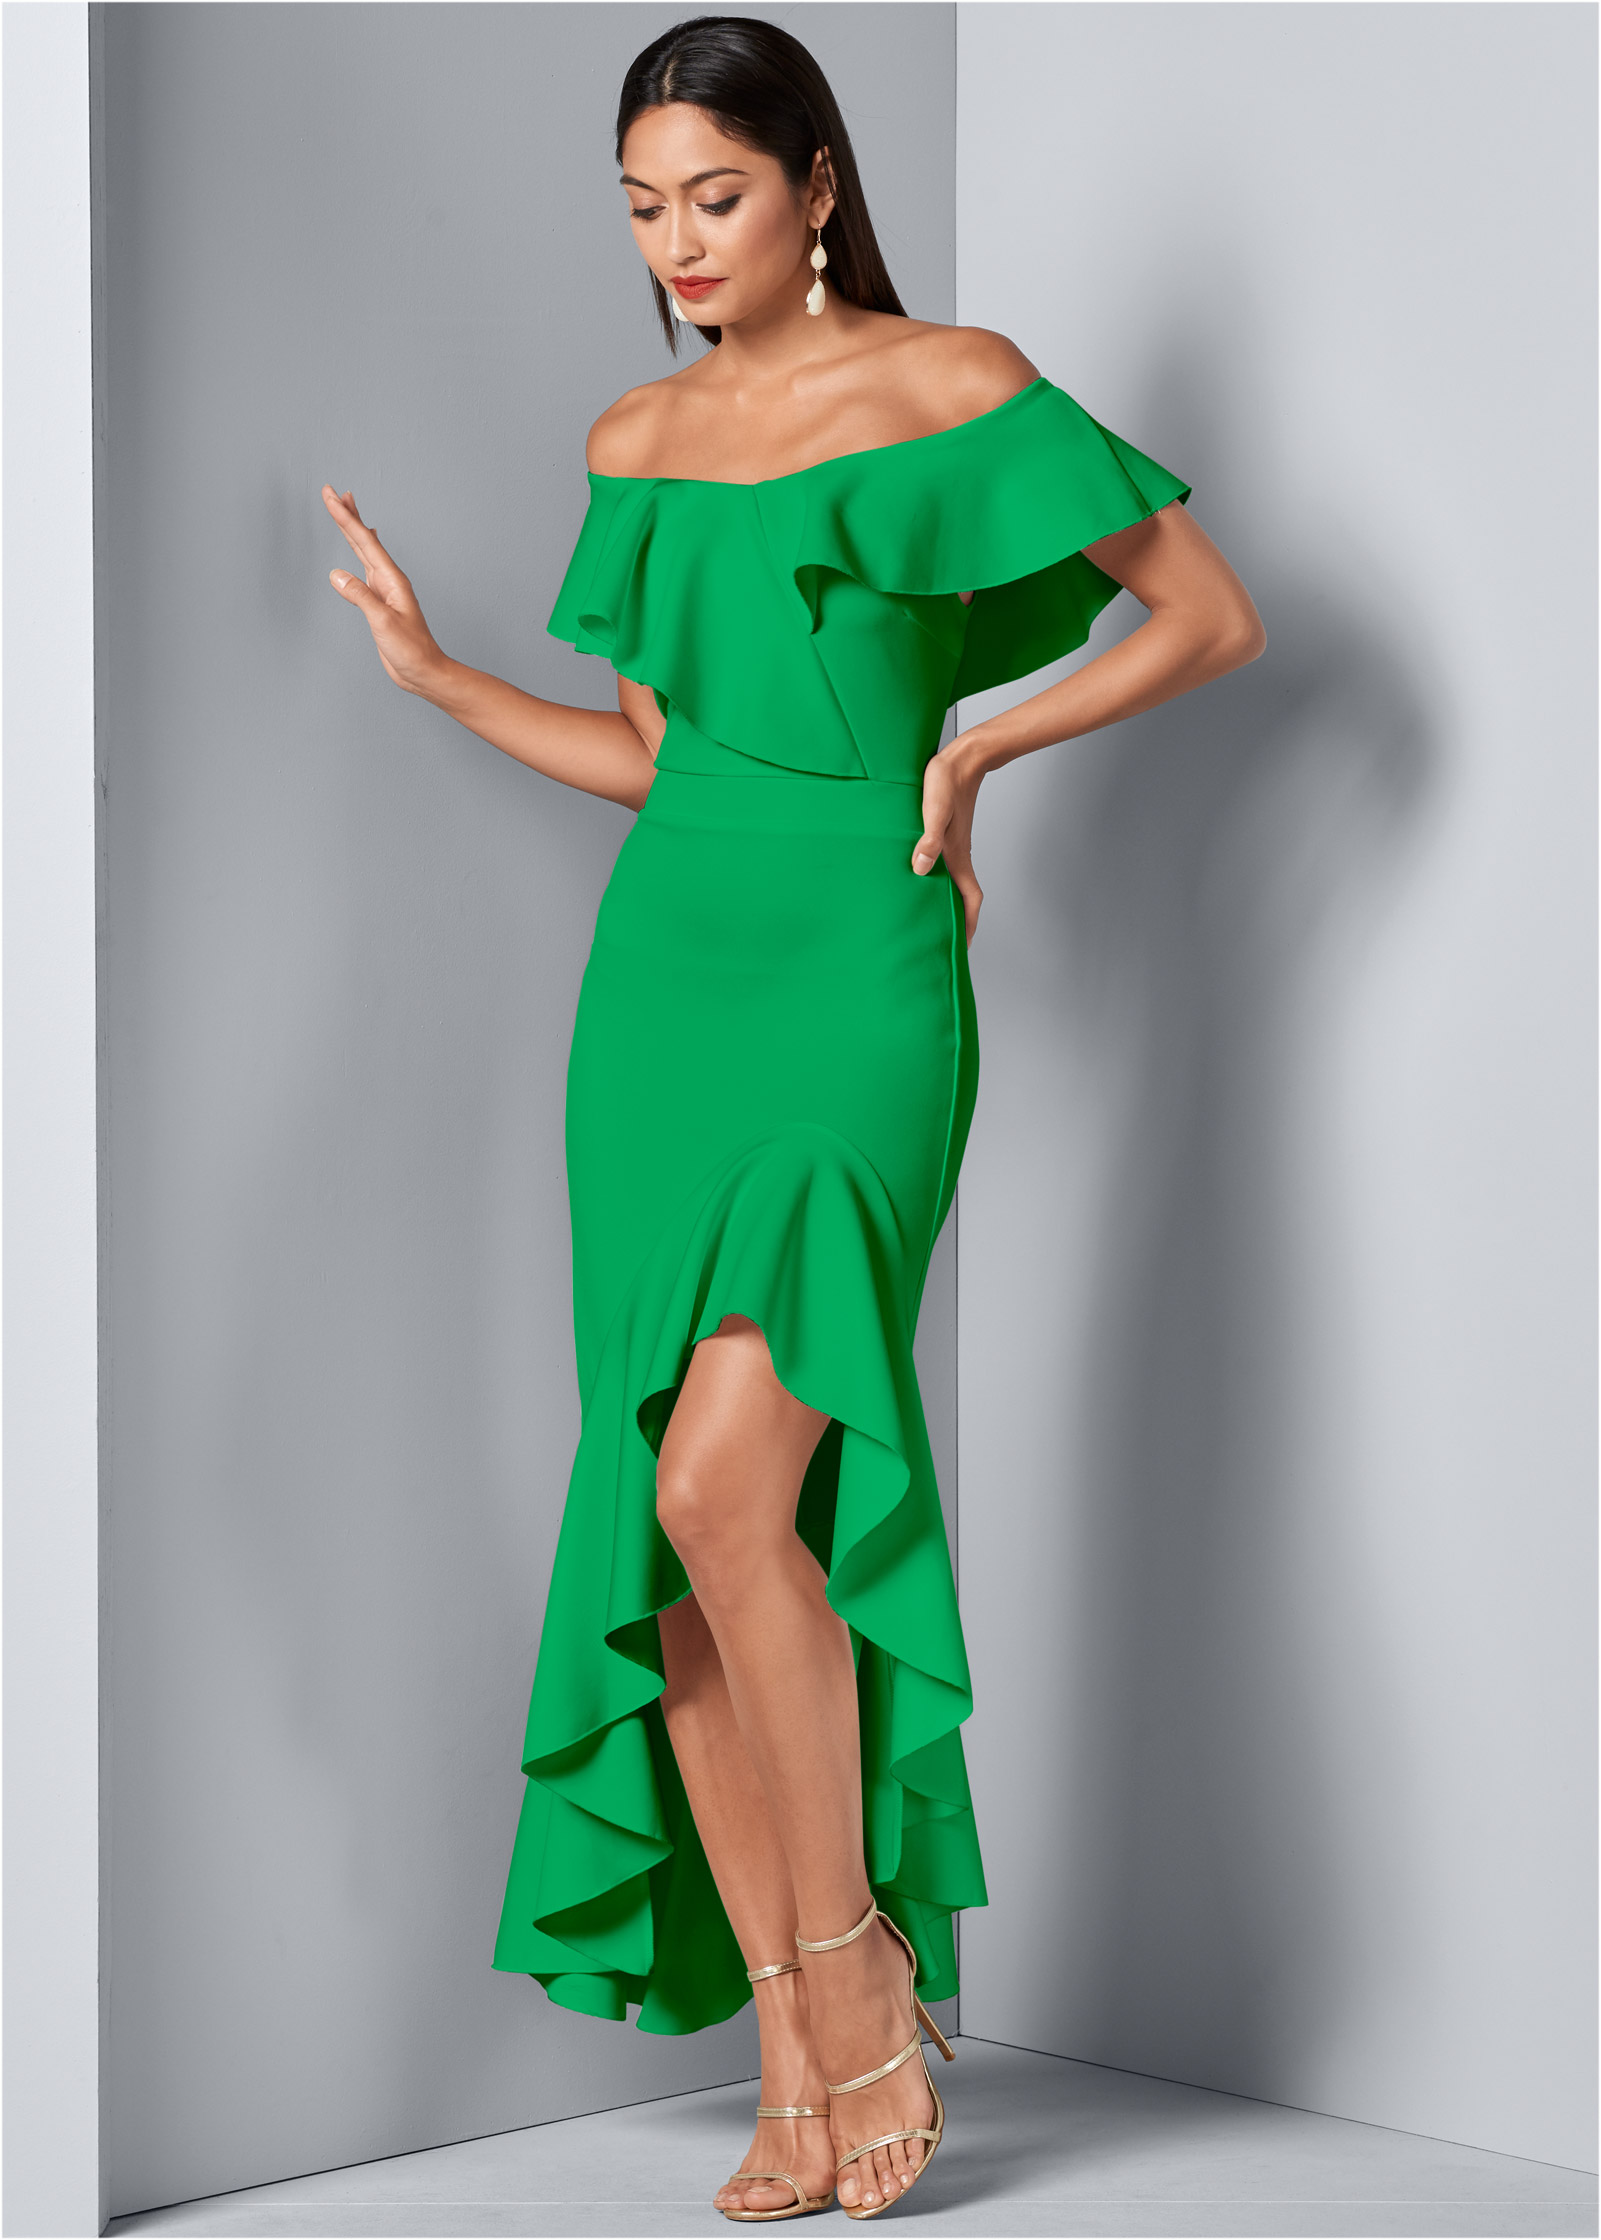 venus green dress